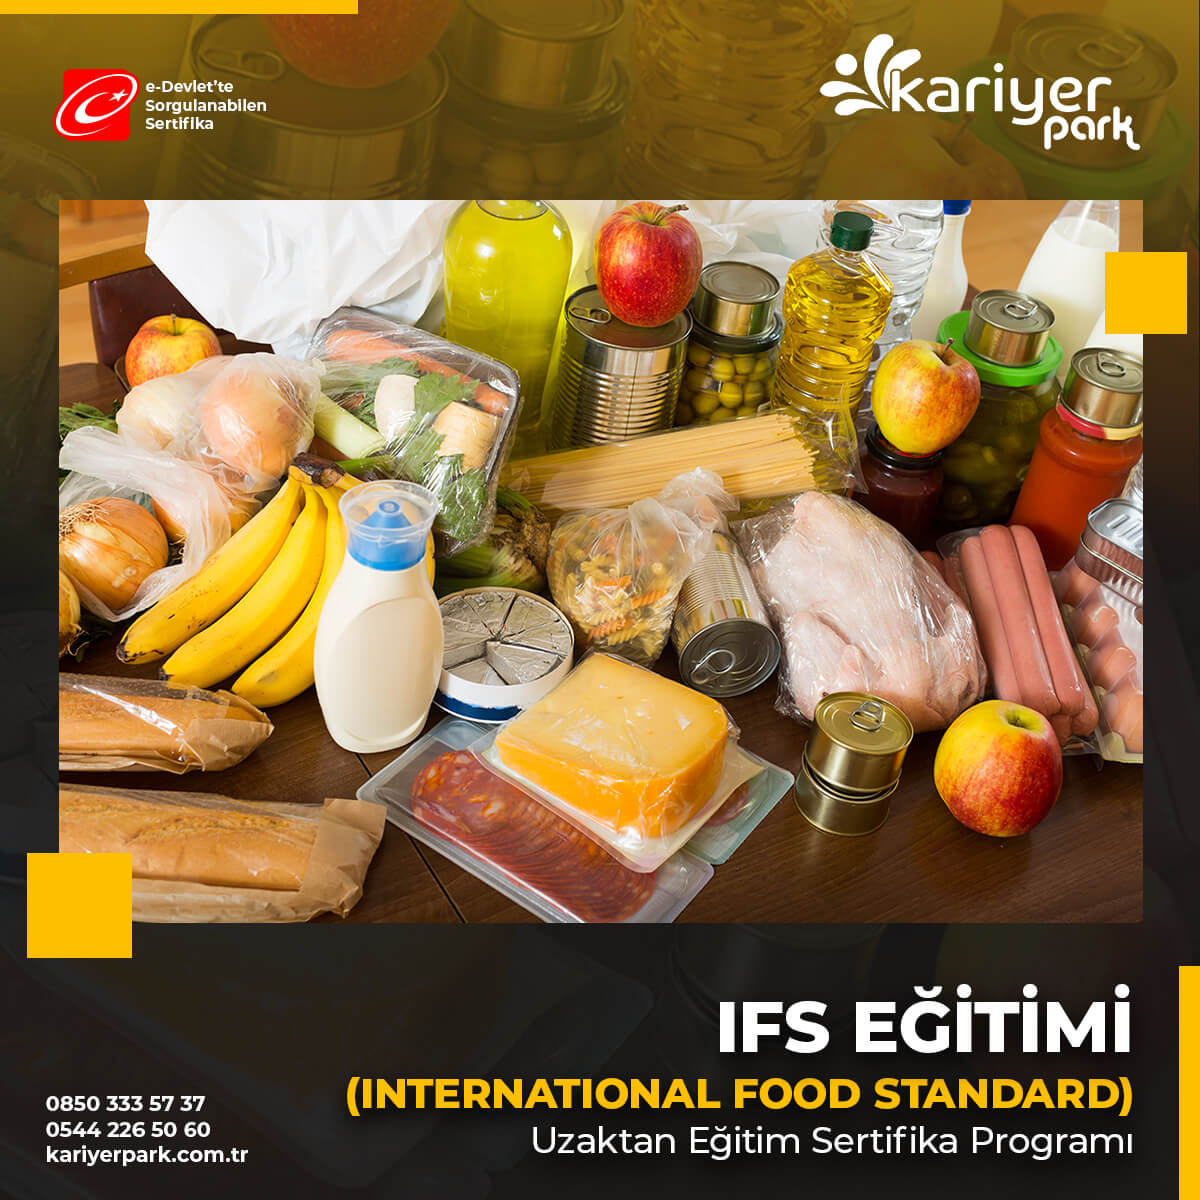 IFS standardı, gıda güvenliğinin ve üreticilerin eşit kontrolüne yaramaktadır. Tarımsal üretimi takip eden gıdanın tüm üretim aşamaları için kullanılabilir.